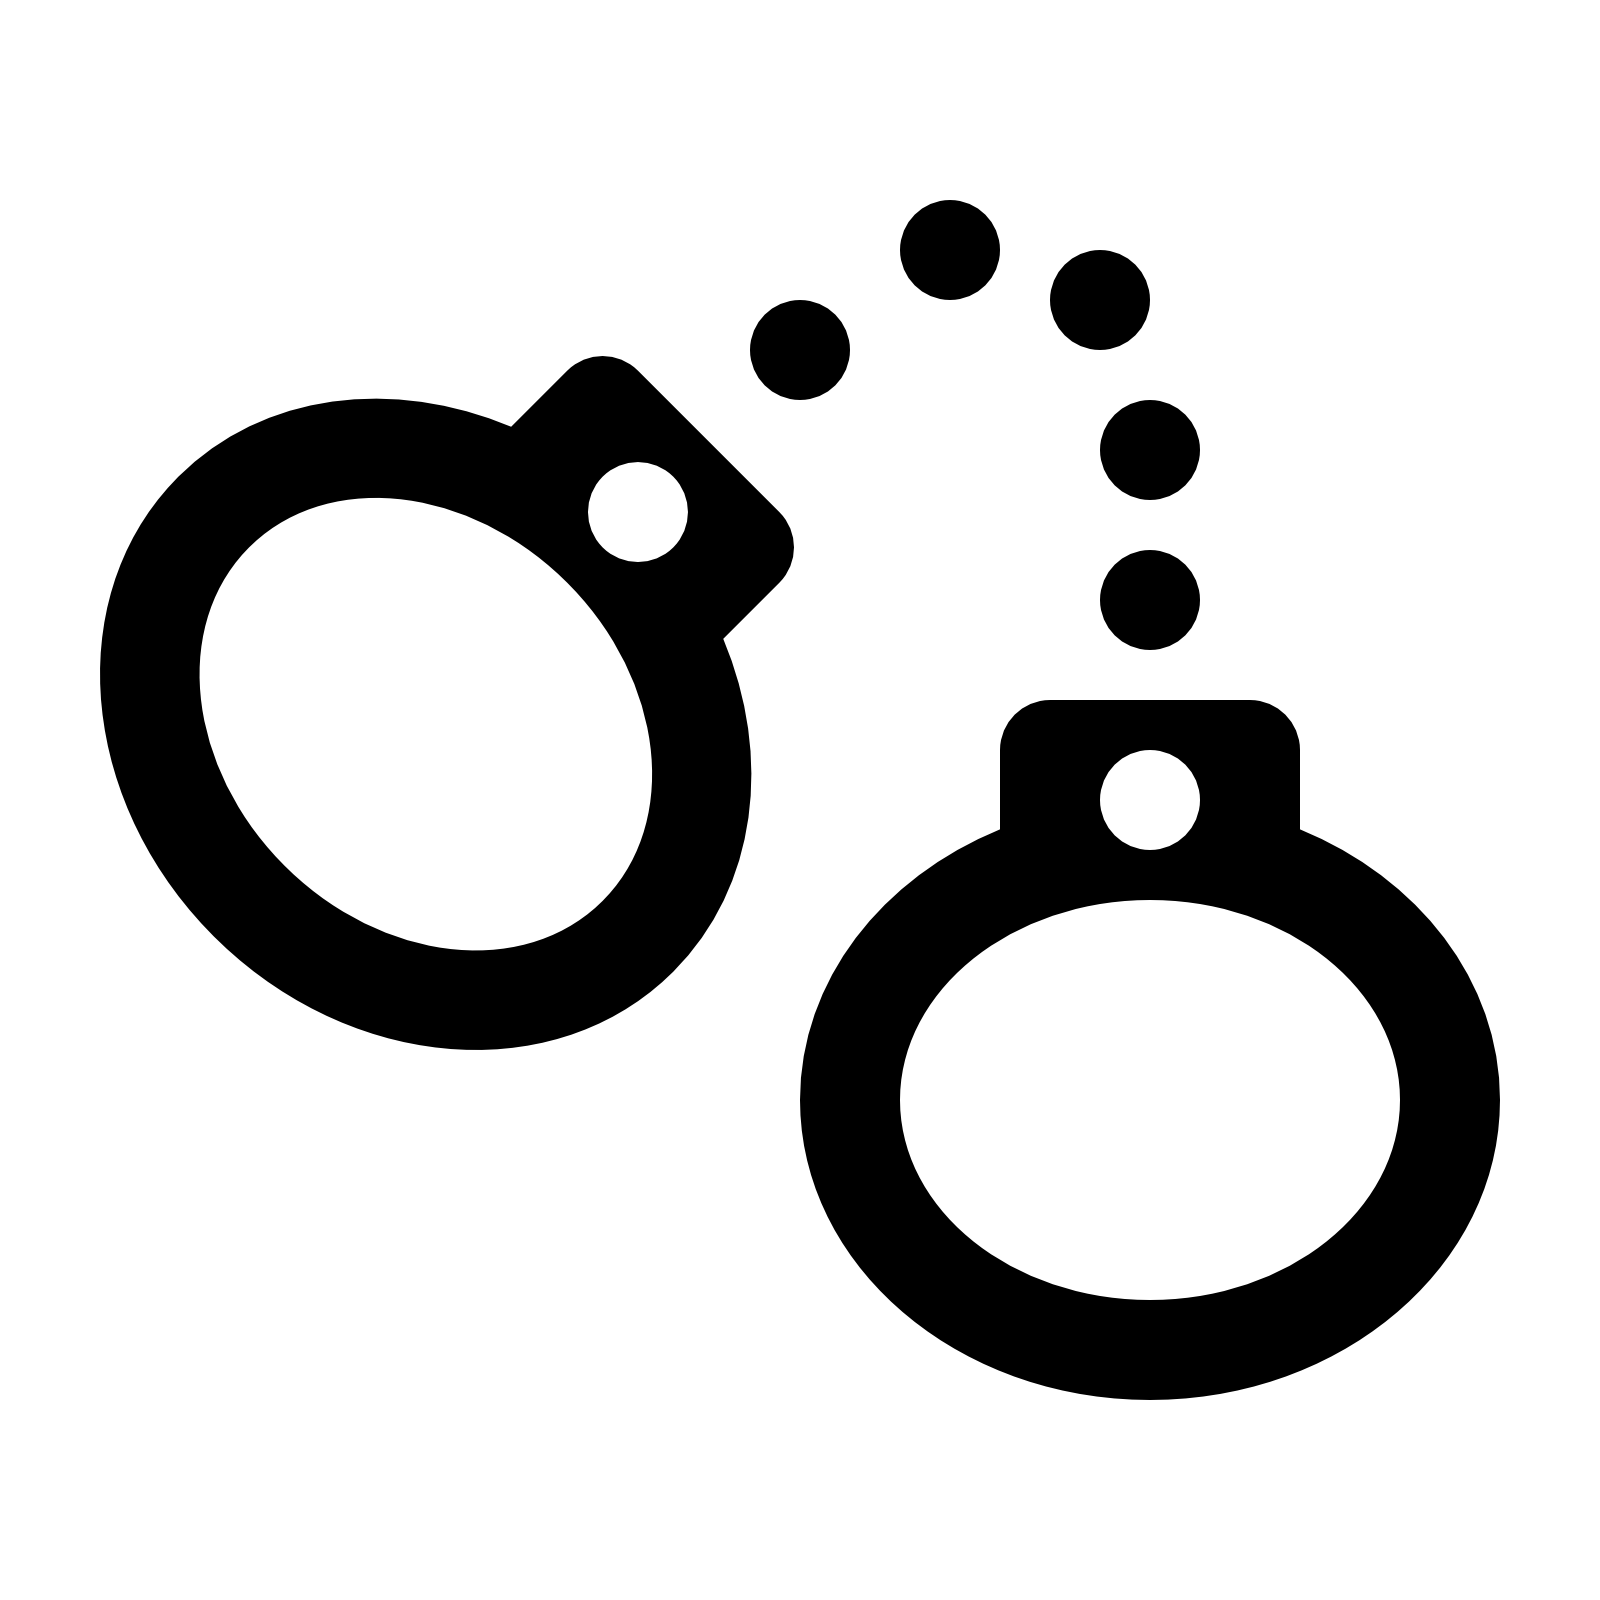 Handcuffs group cartoon clipartpen. Handcuff clipart broken chain